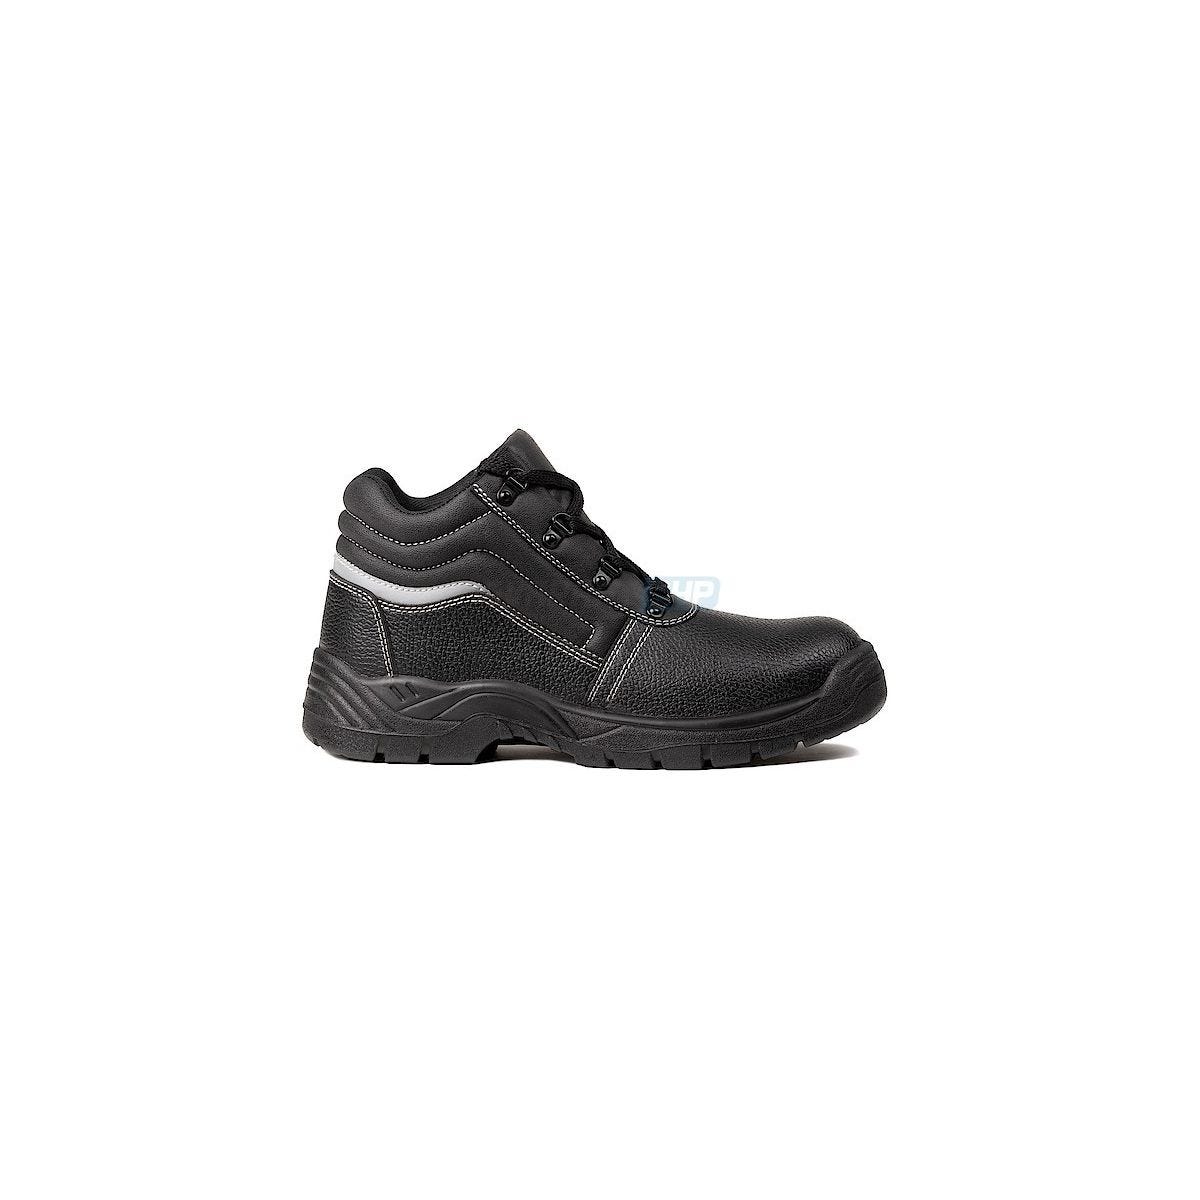 Chaussures de sécurité NACRITE S1P Haute Noir - COVERGUARD - Taille 48 0